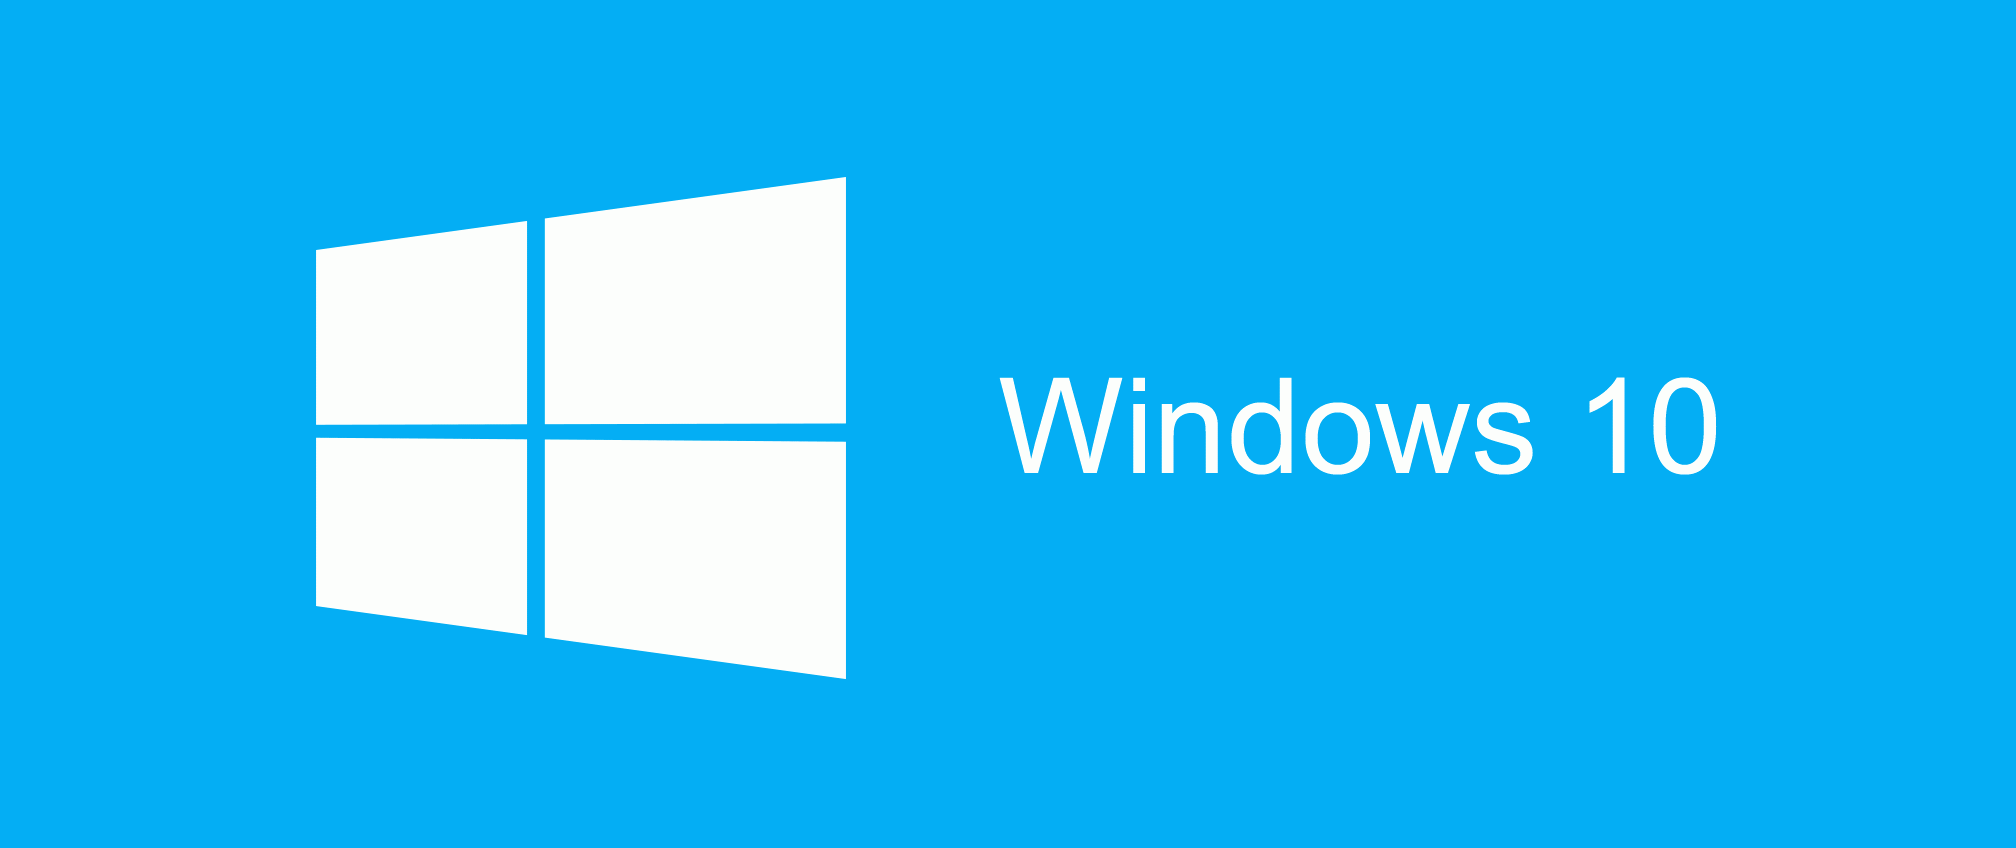 Komputer Hang Buka Chrome Setelah Update Windows 10, Ini Solusi Dari Microsoft